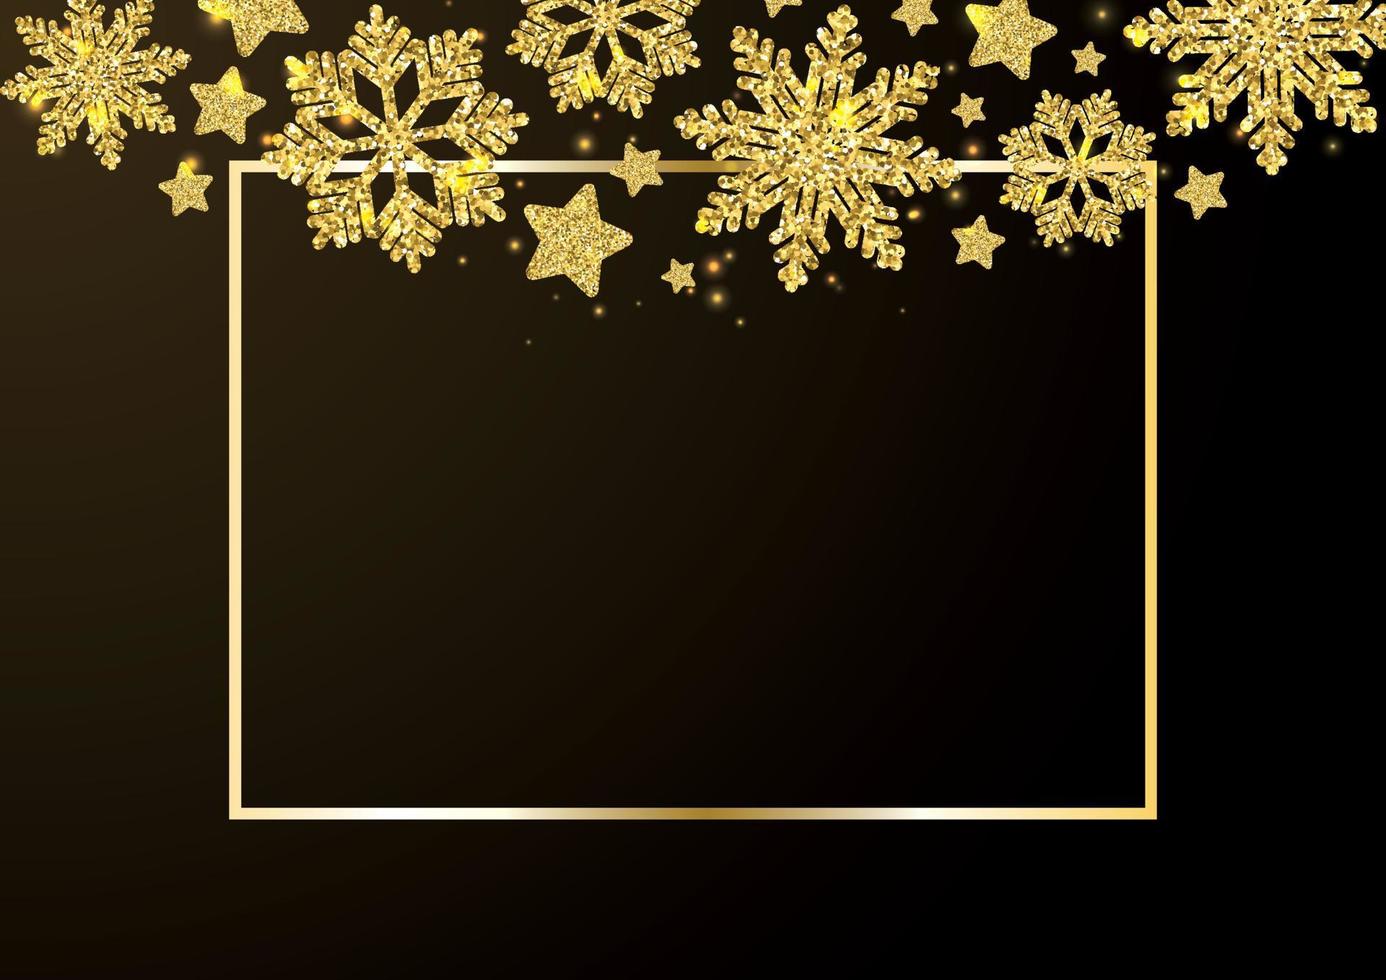 guld snöflingor som faller på svart bakgrund. gyllene snöflingor gränsar till olika prydnader. lyxig julkrans. vinterprydnad för förpackningar, kort, inbjudningar. vektor illustration.